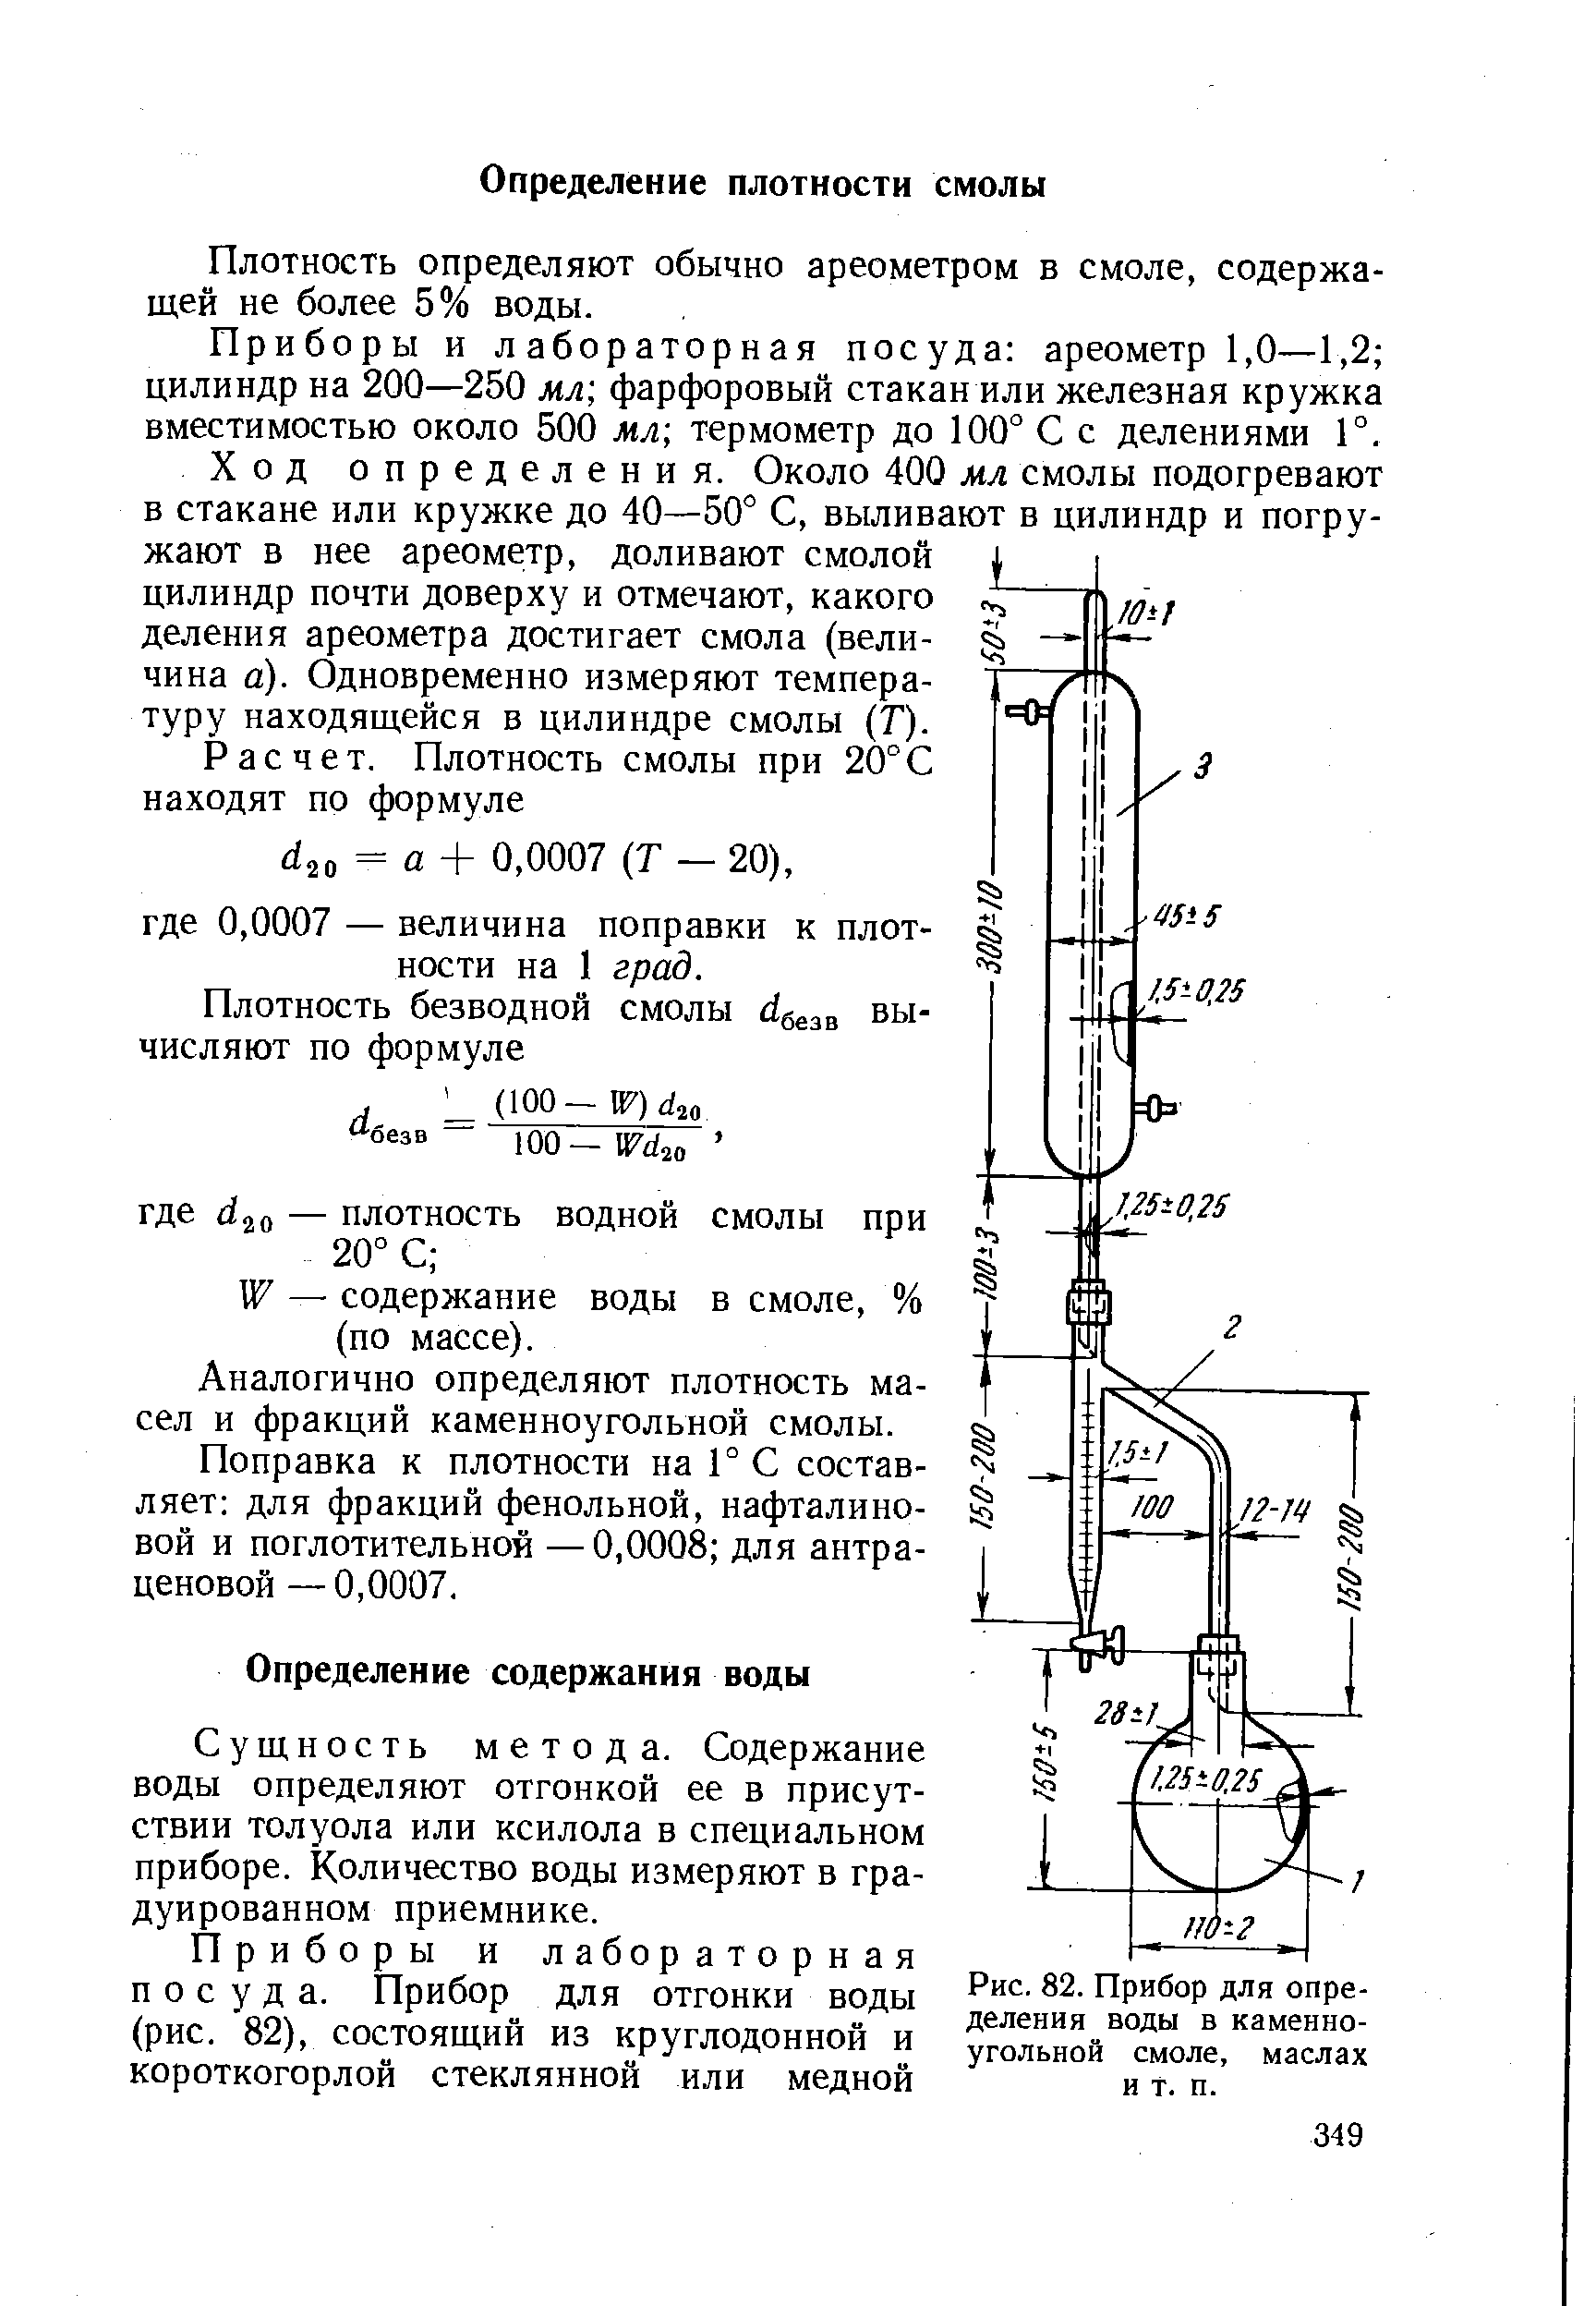 Аков-10-1 аппарат для определения содержания воды. Приемник-ЛОВУШКА К аппарату аков-25. Способ измерения воды